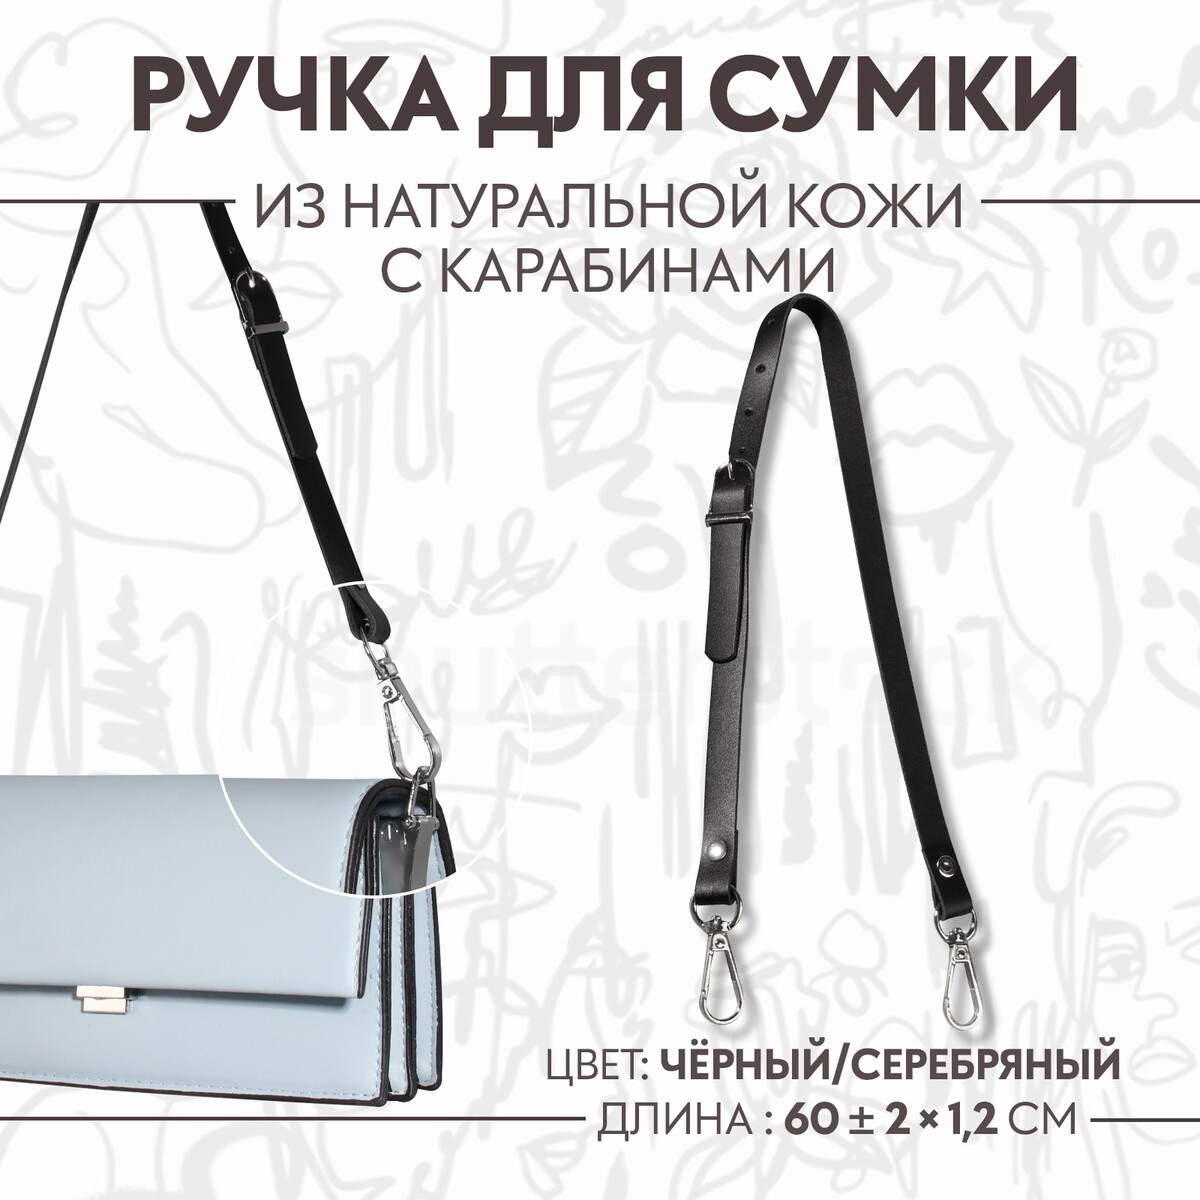 Ручка для сумки из натуральной кожи, регулируемая, с карабинами, 60 ± 2 см × 1,2 см, цвет черный/серебряный